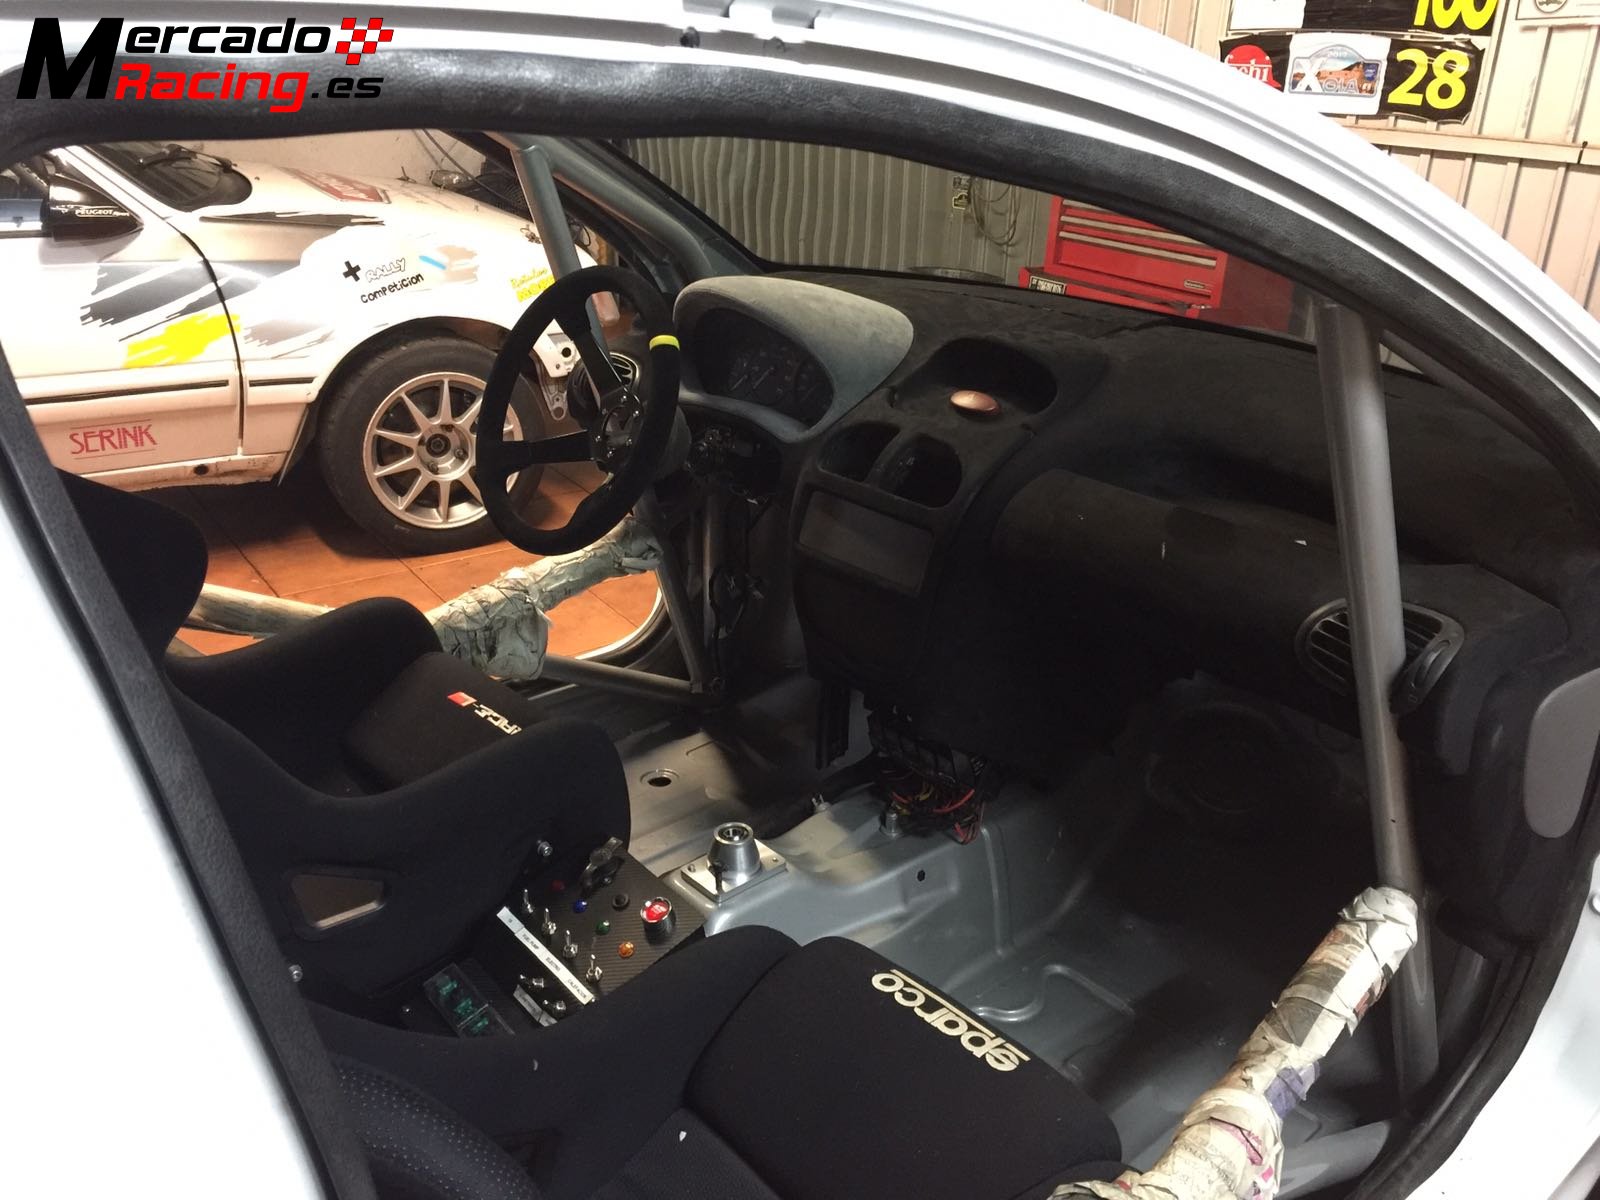 Peugeot 206 1.6 16v (volante fga)